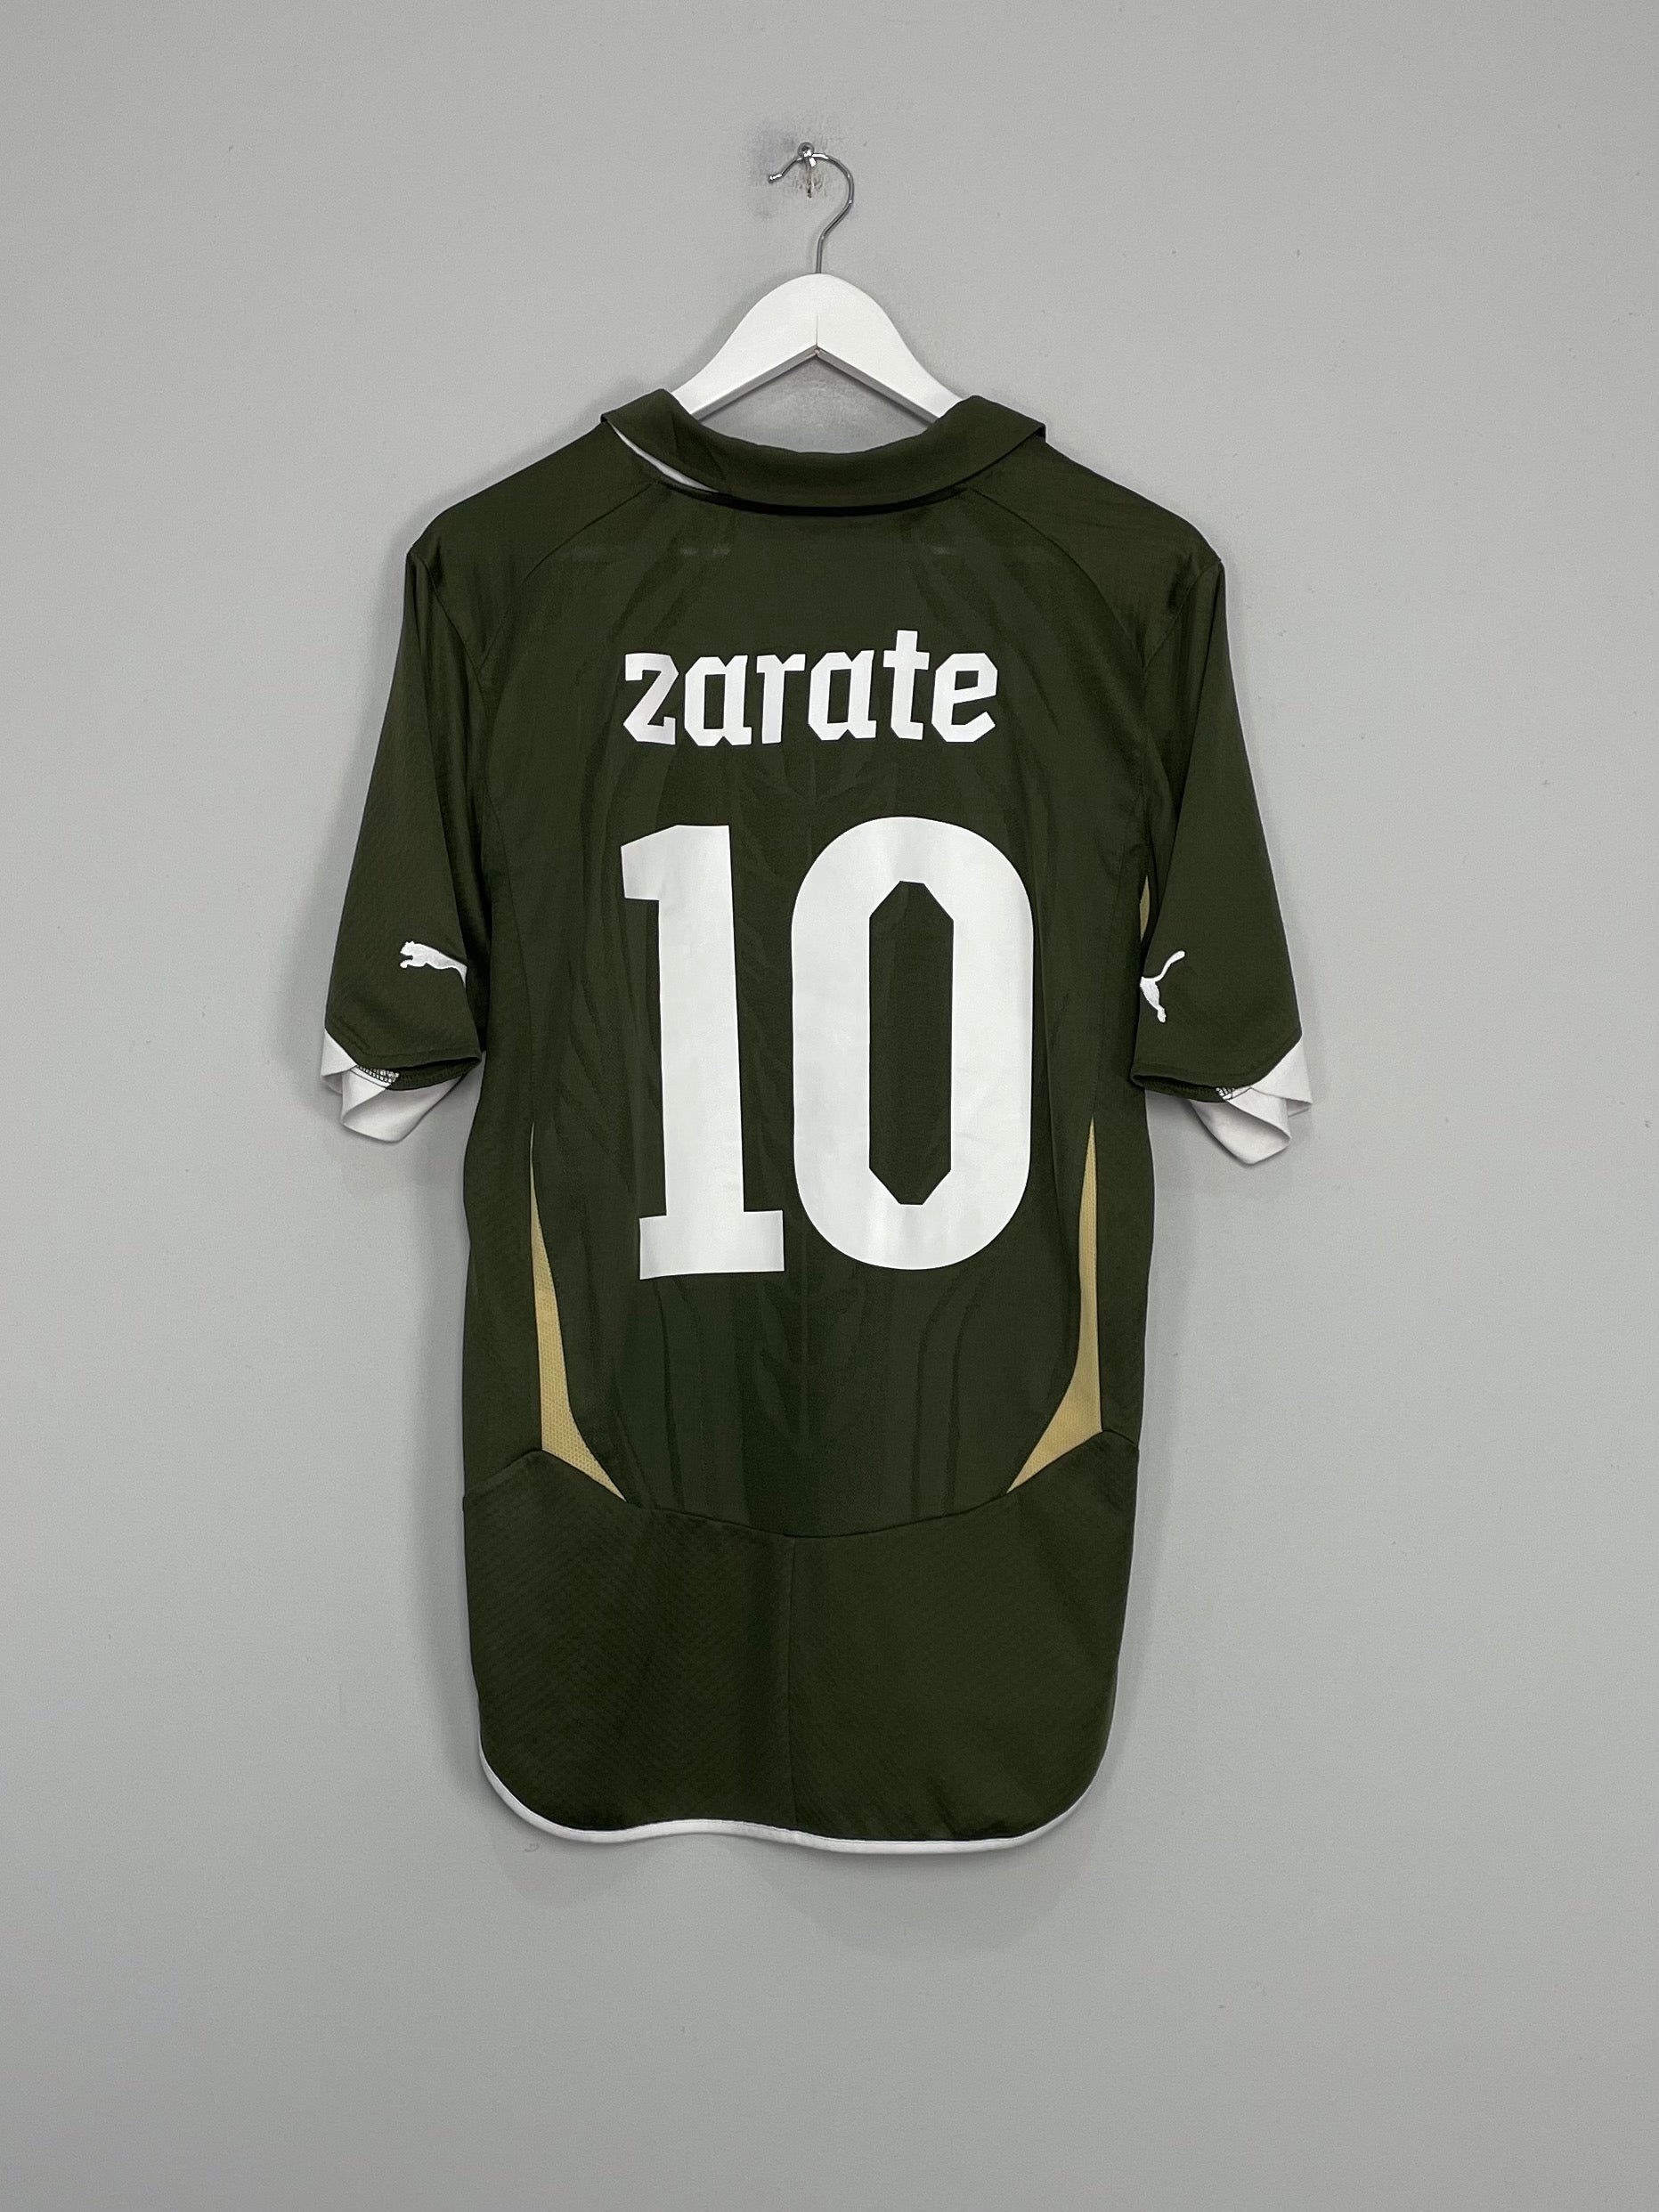 Getafe Goalkeeper football shirt 2010 - 2011.